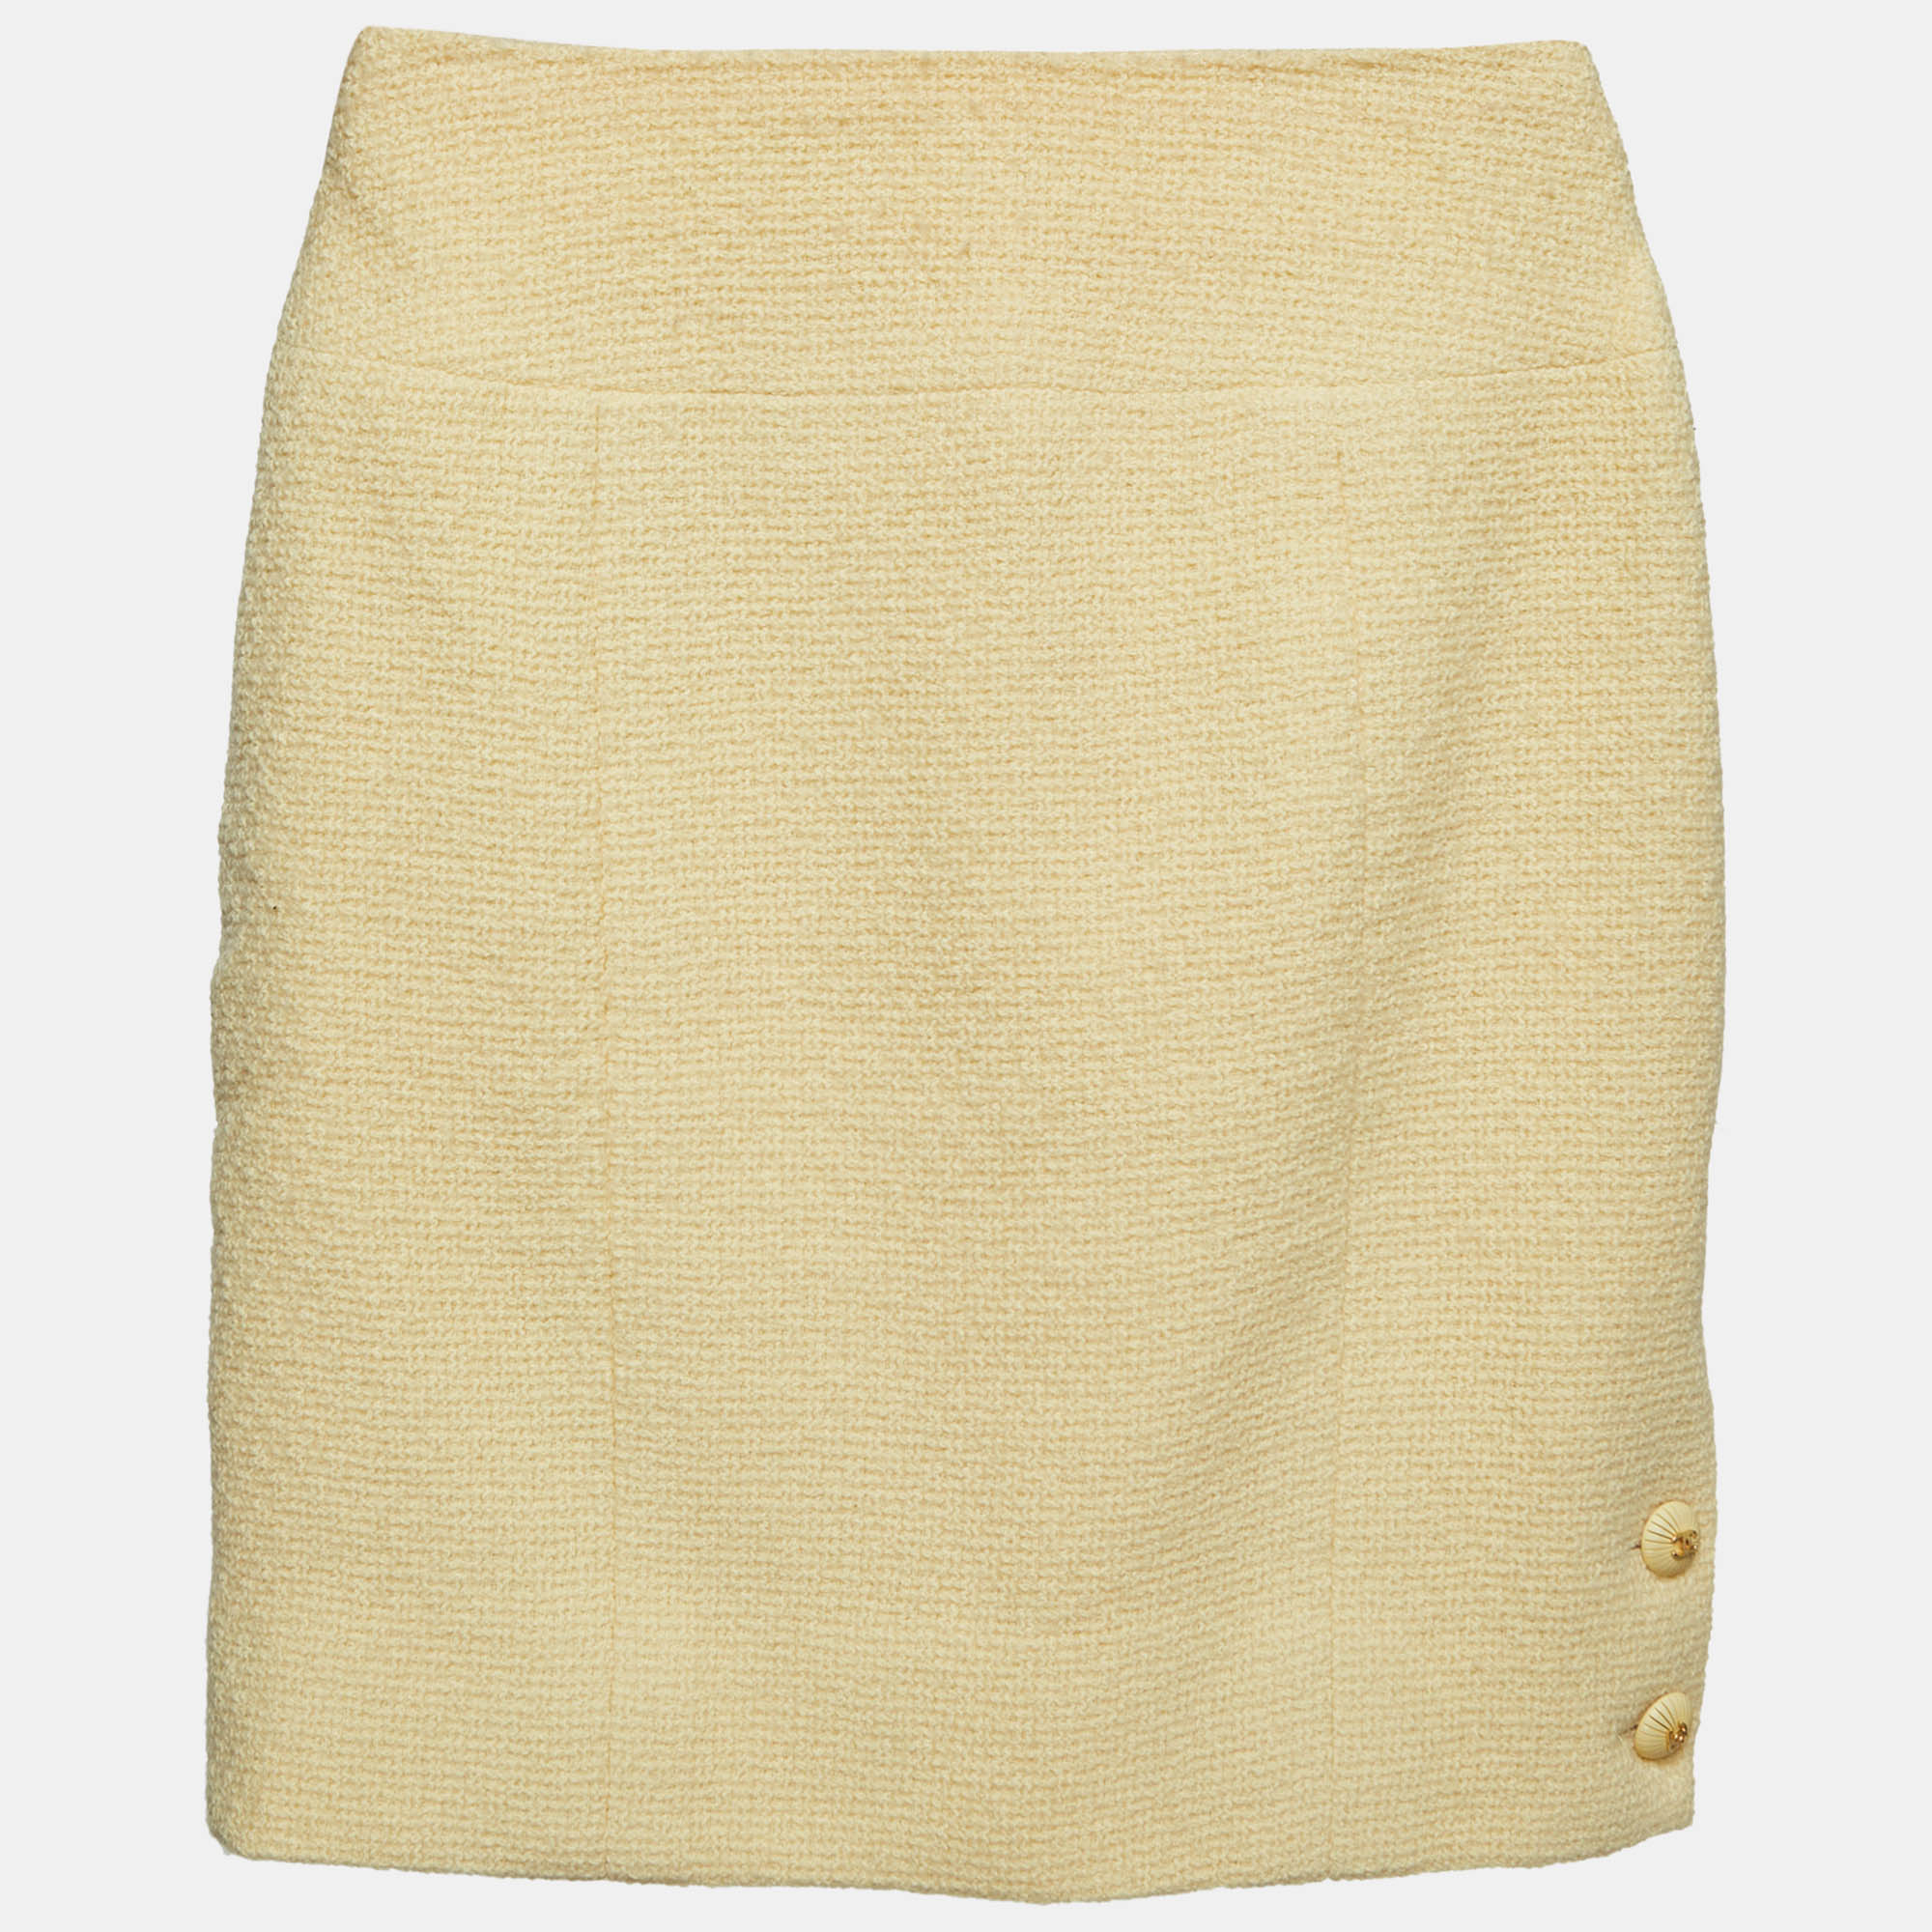 Chanel yellow wool mini skirt xs